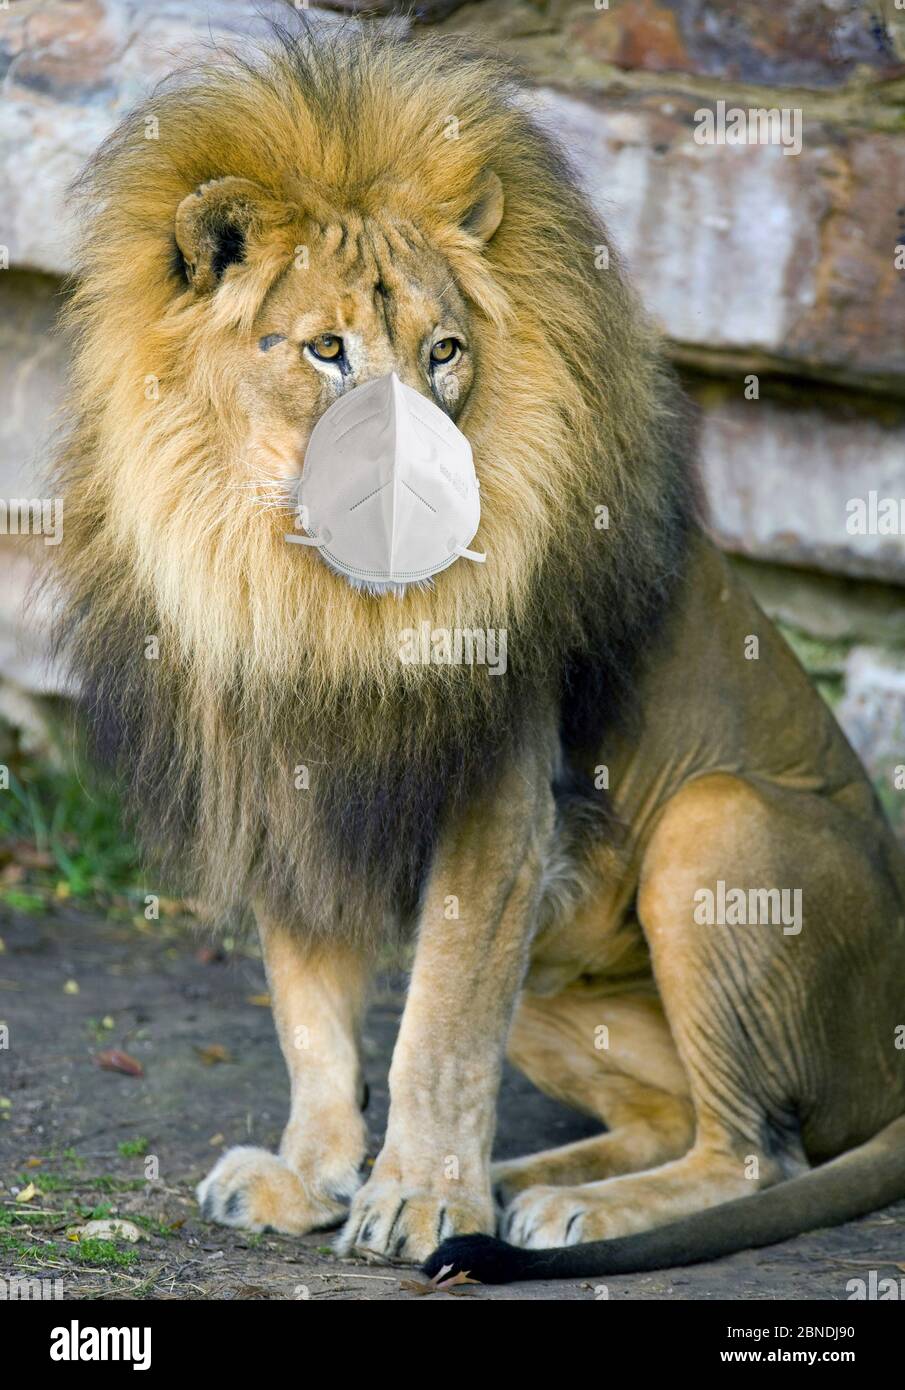 Grand lion africain portant le masque N95. Banque D'Images